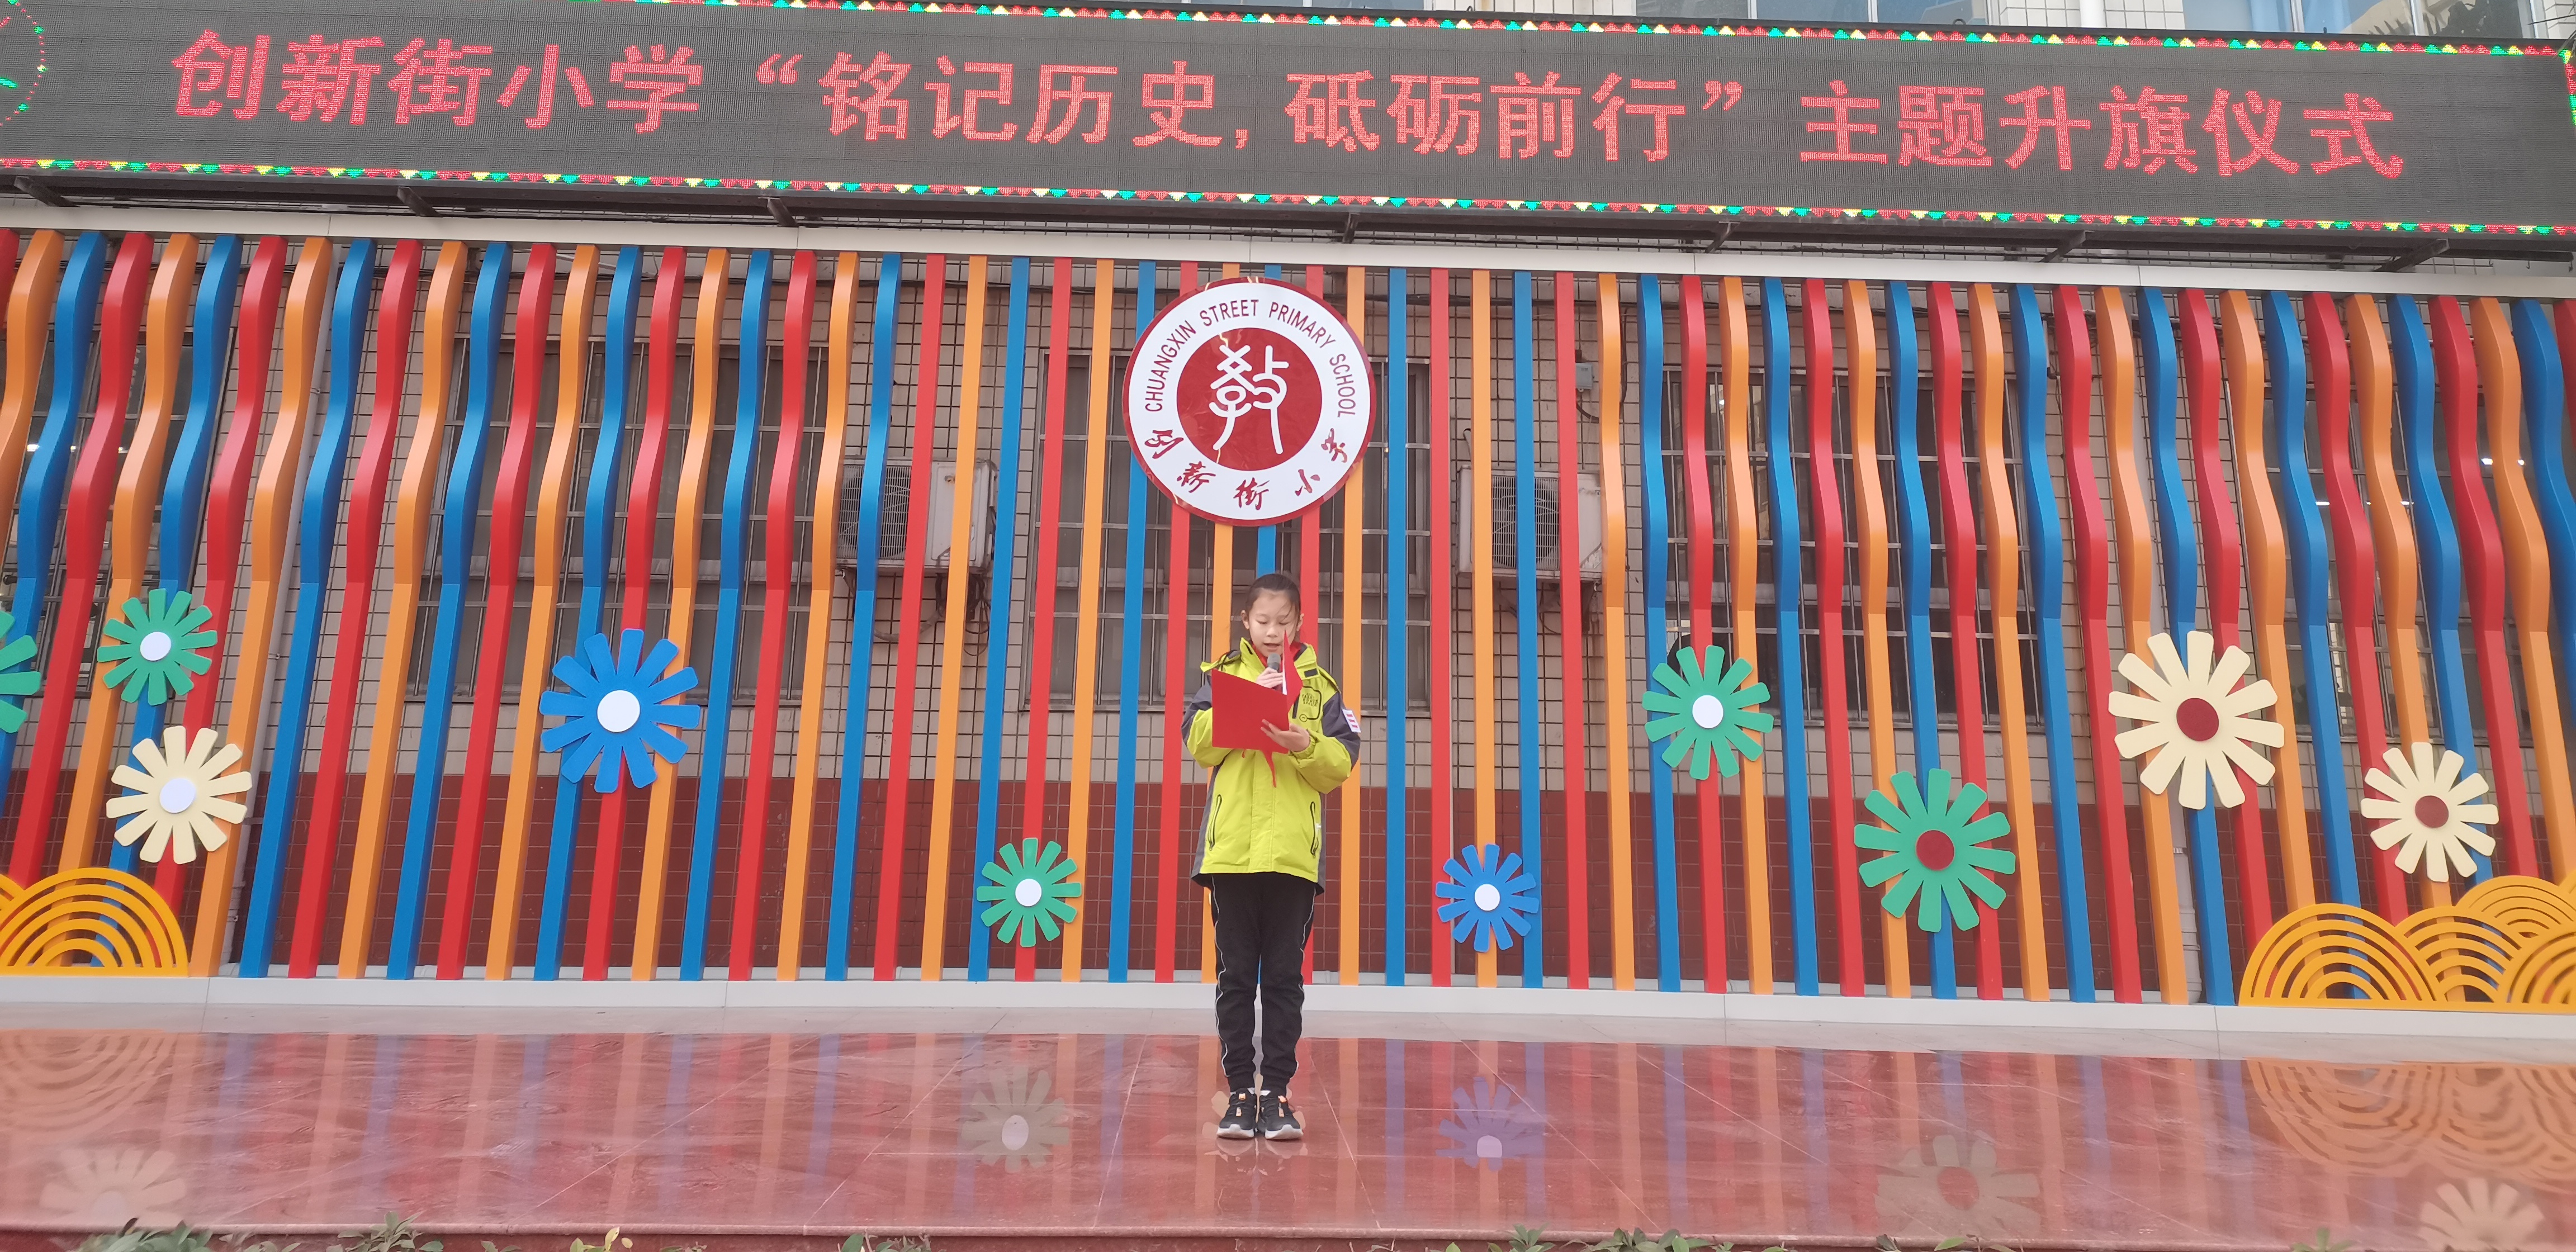 铭记历史砥砺前行郑州市管城区创新街小学举行主题升旗仪式